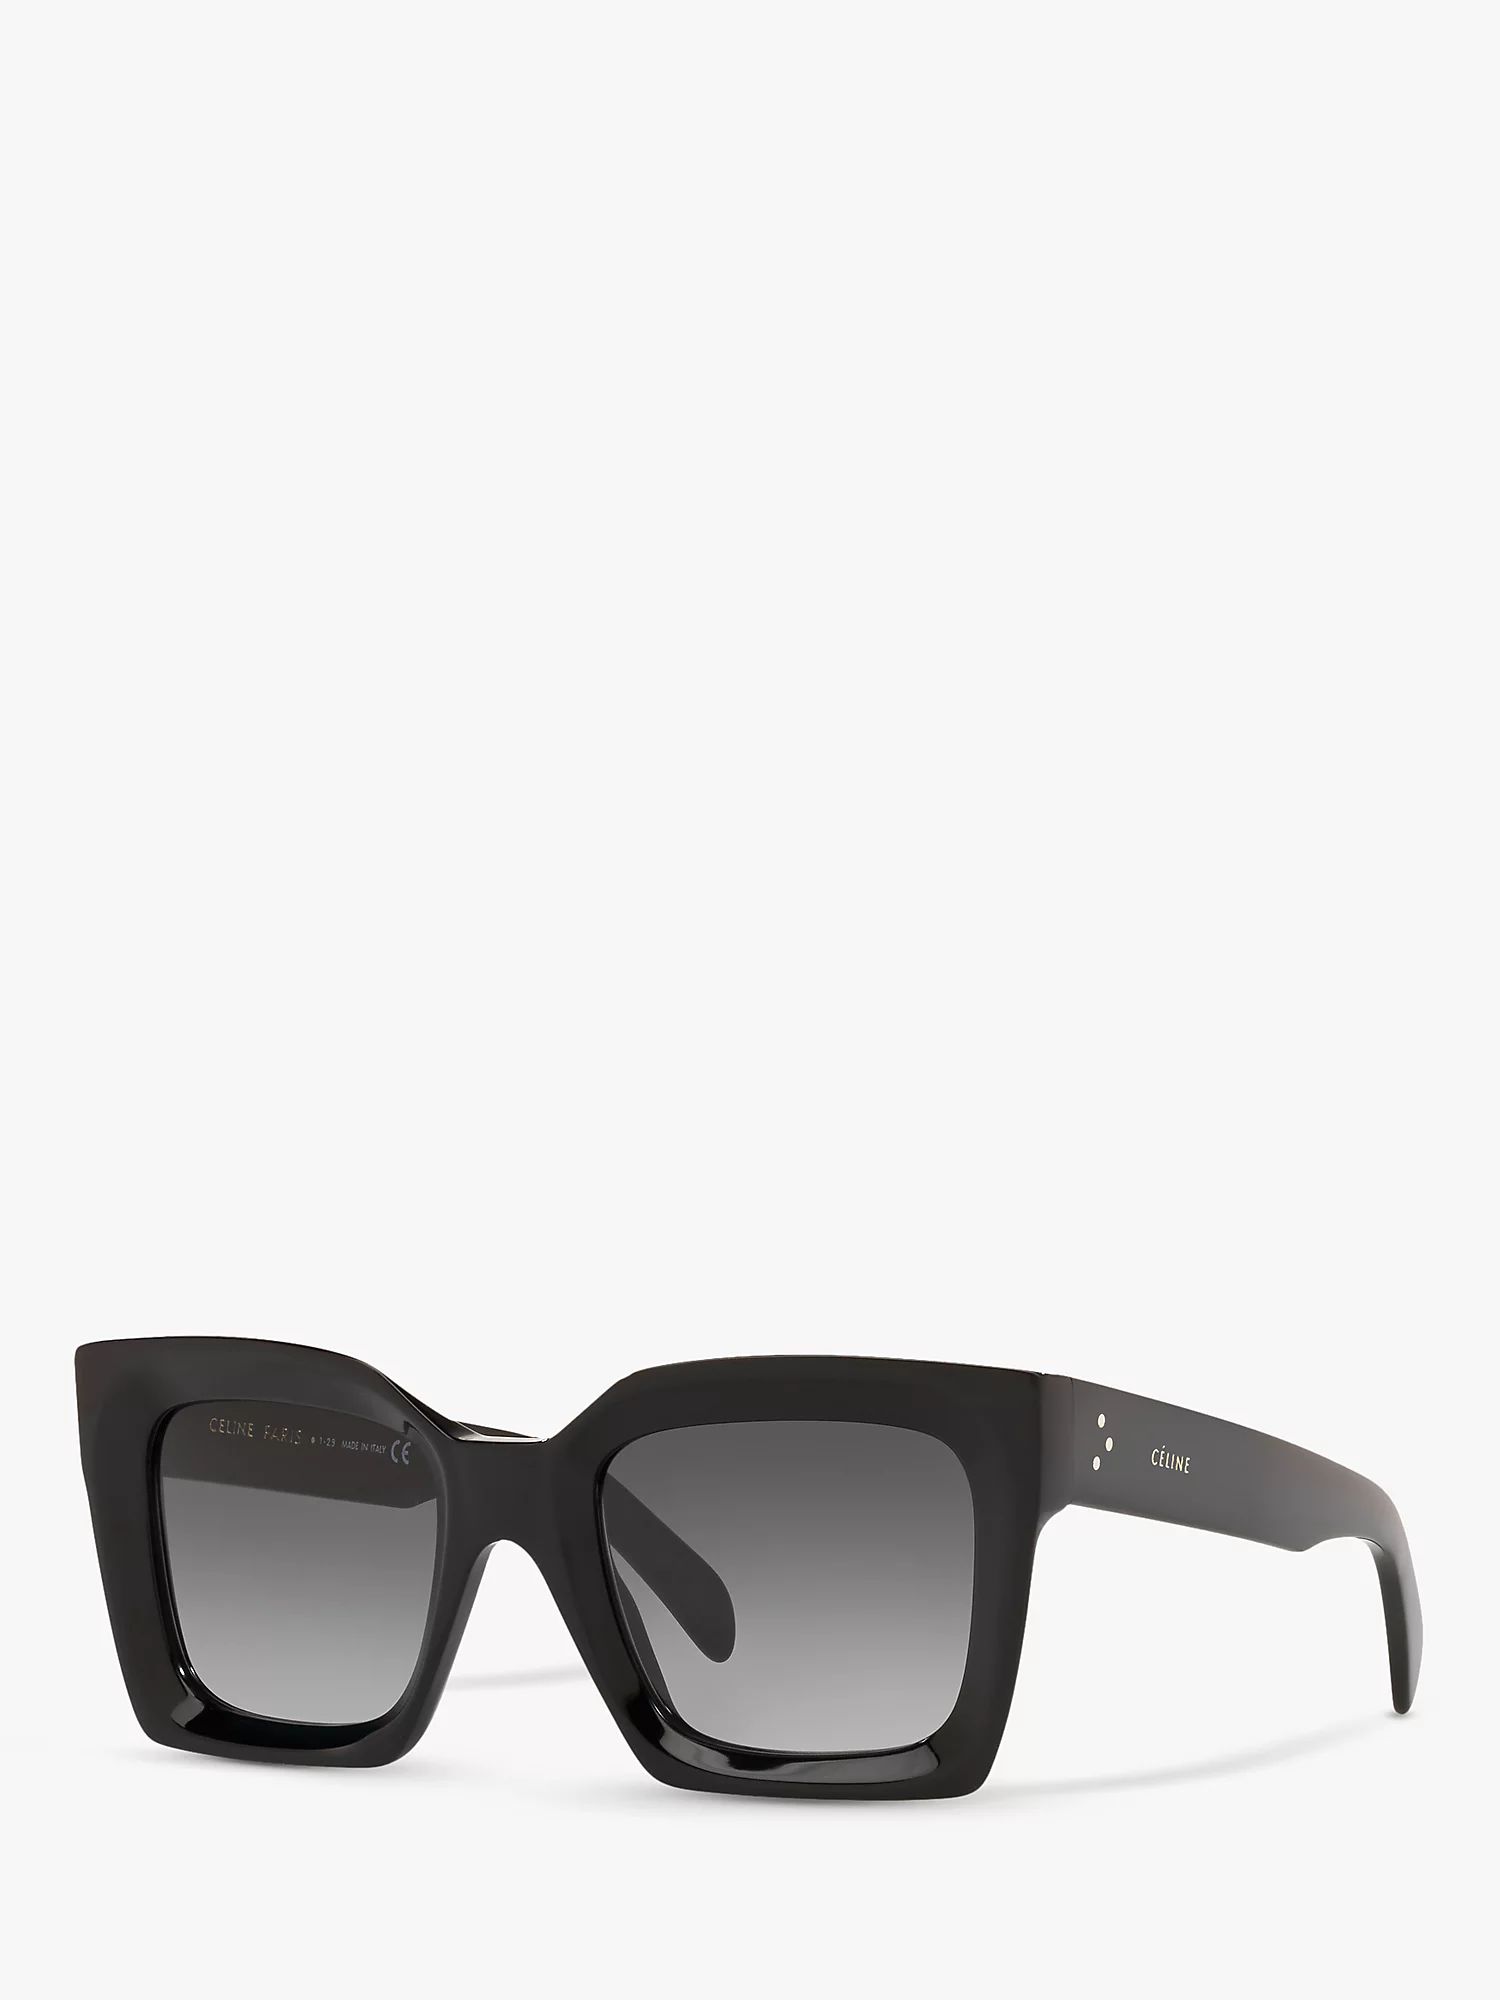 Celine 0CL000245 Women's Square Sunglasses, Shiny Black | John Lewis (UK)